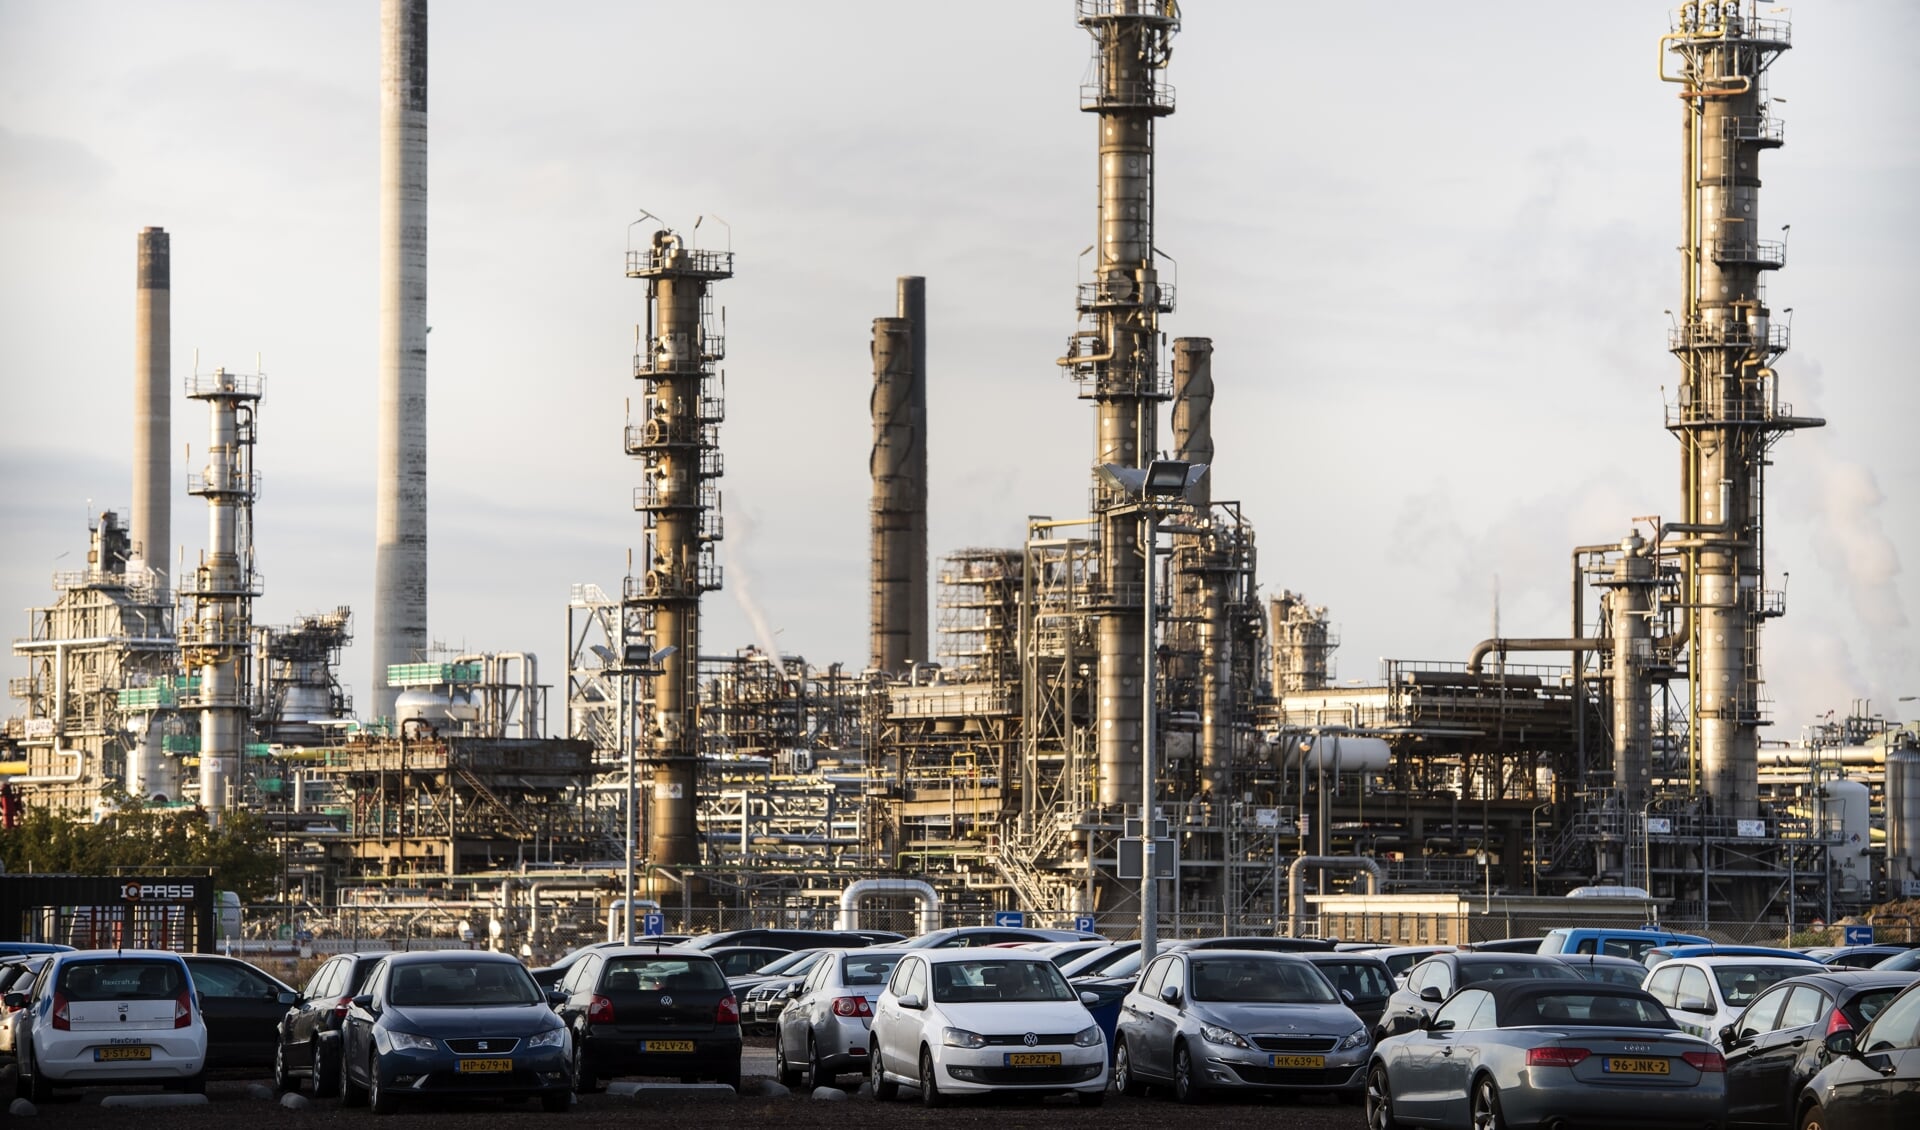 De raffinaderij van Shell Pernis in het Rotterdamse havengebied. Multinationals als Shell leveren een belangrijke bijdrage aan werk en welvaart in Nederland.